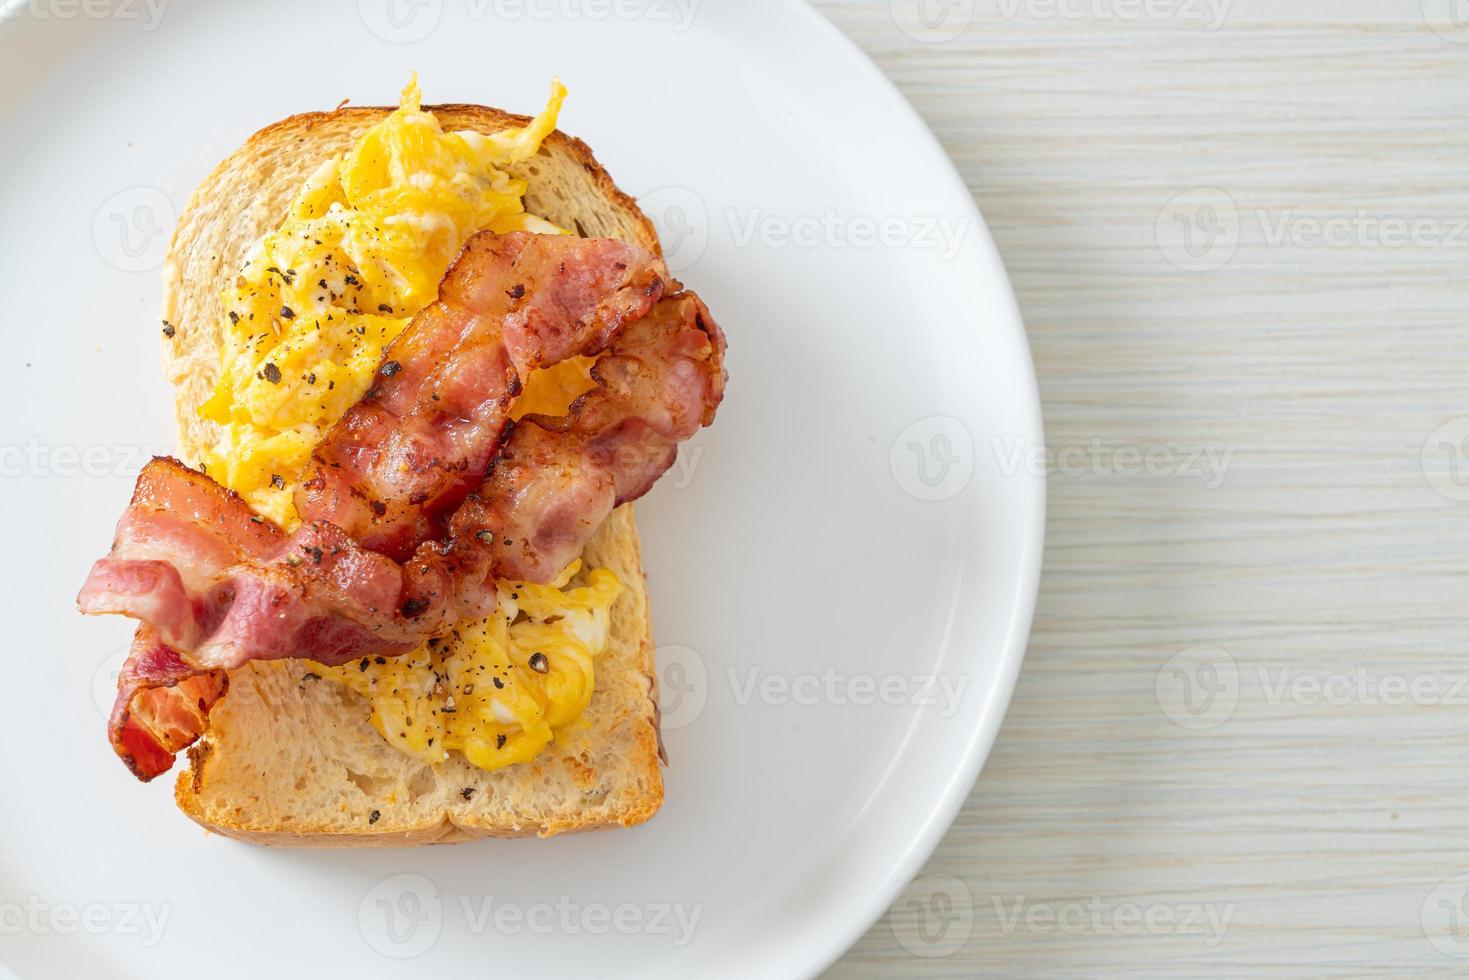 brödskål med äggröra och bacon på den vita plattan foto